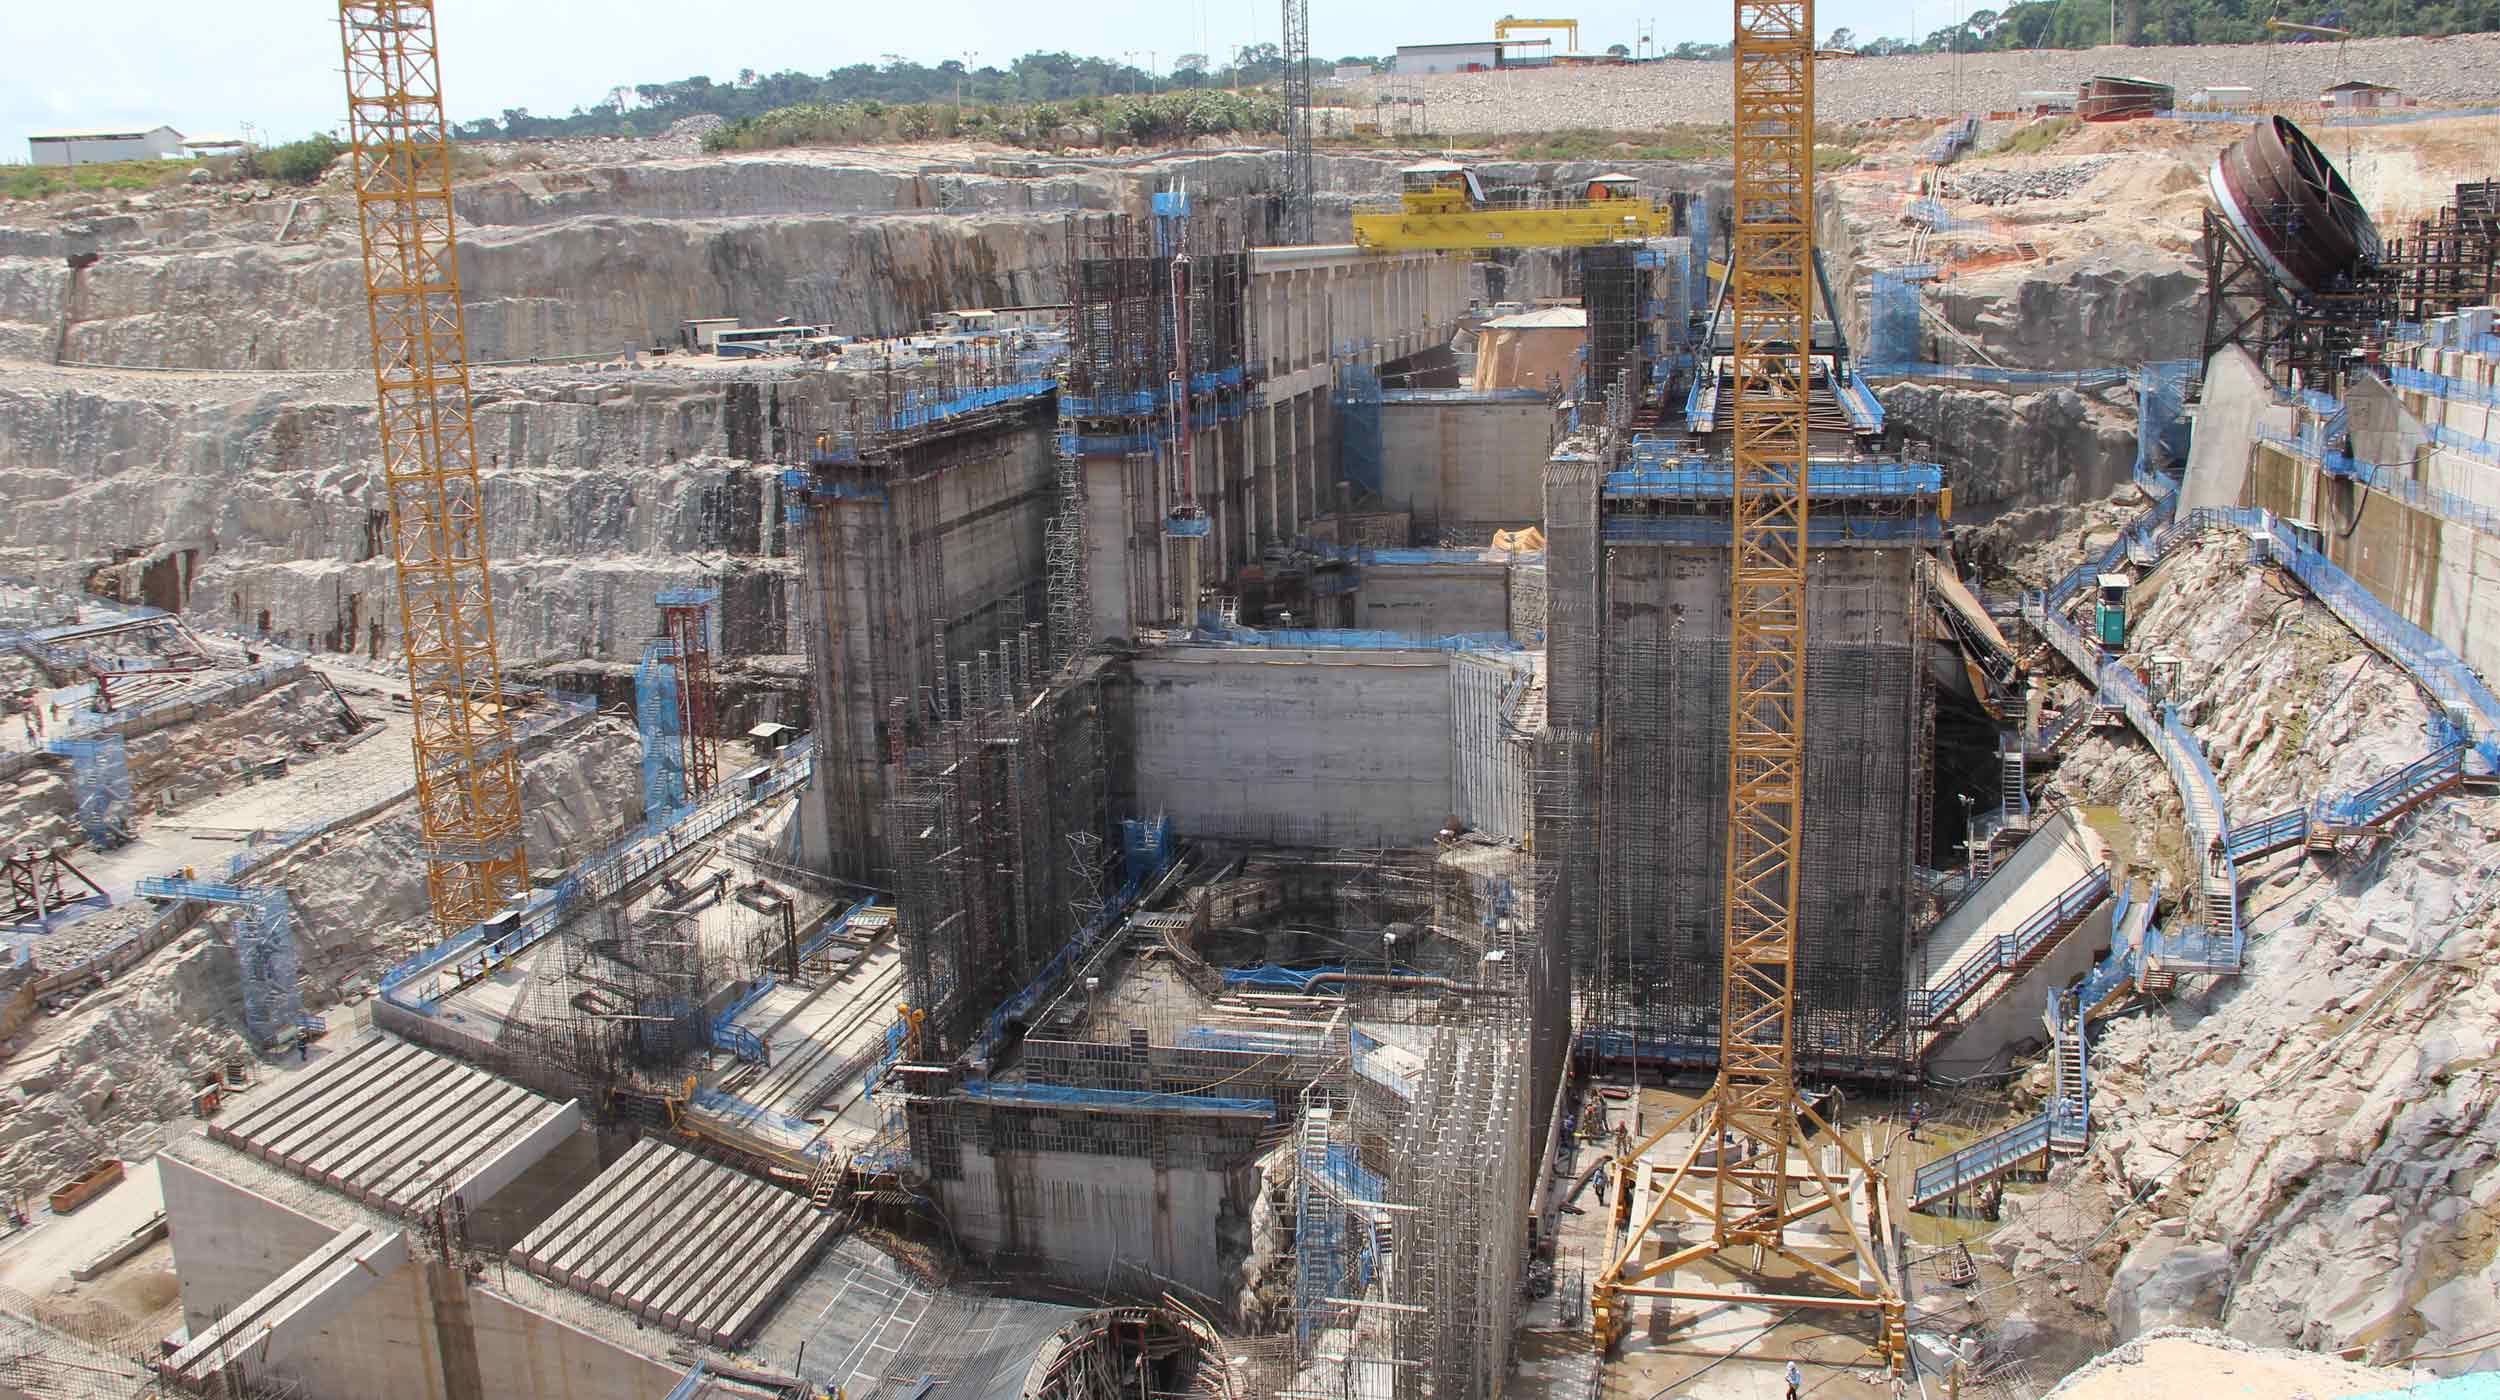 Brasilgo Gobernu Federalaren Hazkundea Azeleratzeko Programan jasotako azpiegitura planaren zati bat da Teles Pires planta hidroelektrikoa.